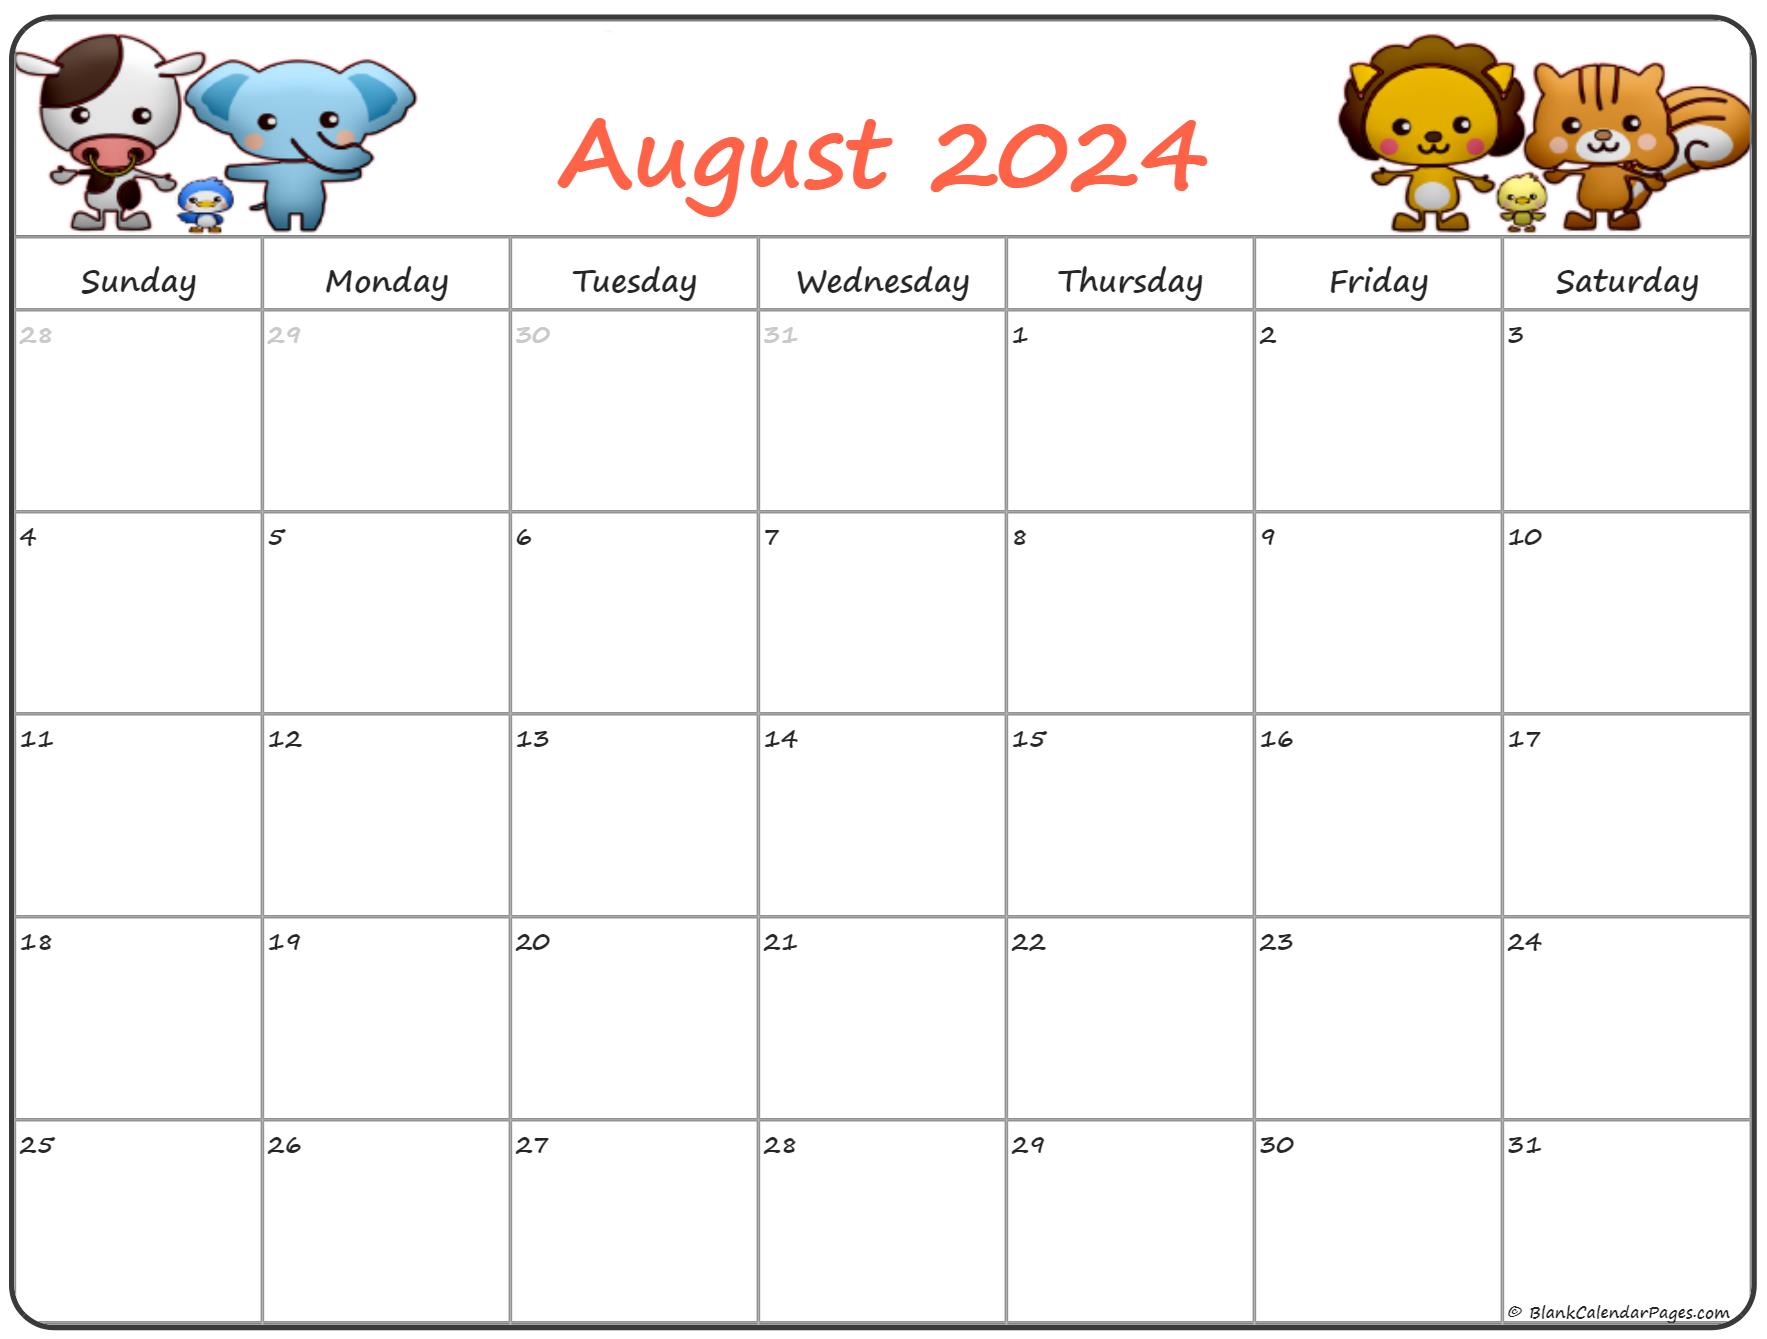 August 2020 Pregnancy Calendar | Fertility Calendar1767 x 1339